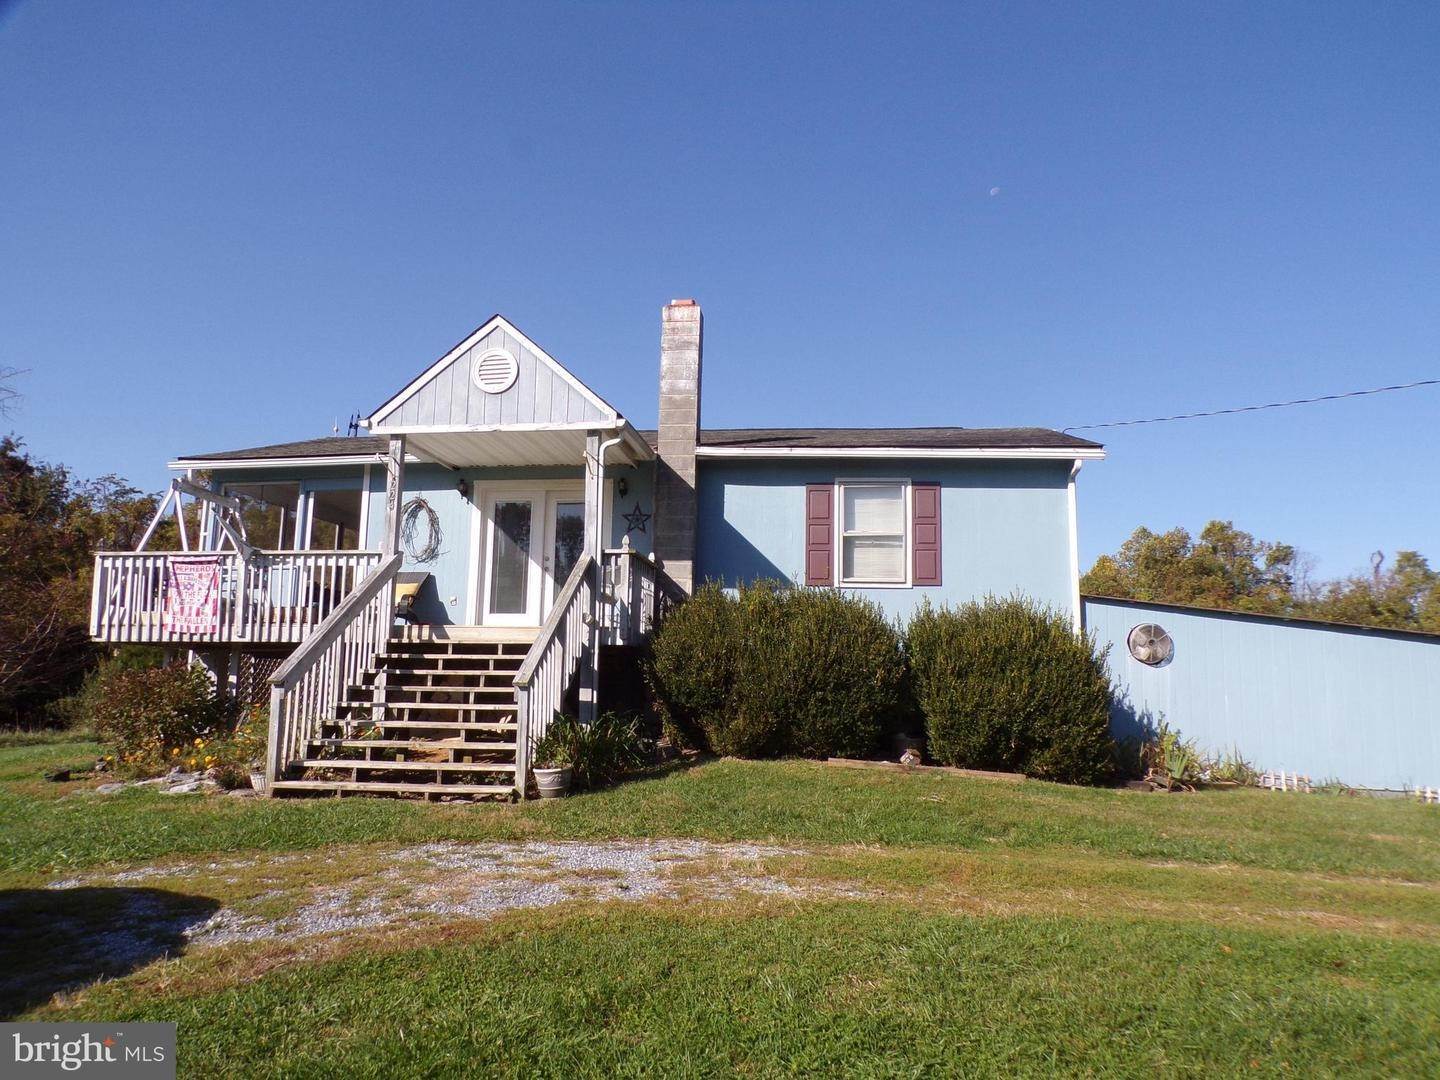 Single Family Homes voor Verkoop op Harpers Ferry, West Virginia 25425 Verenigde Staten